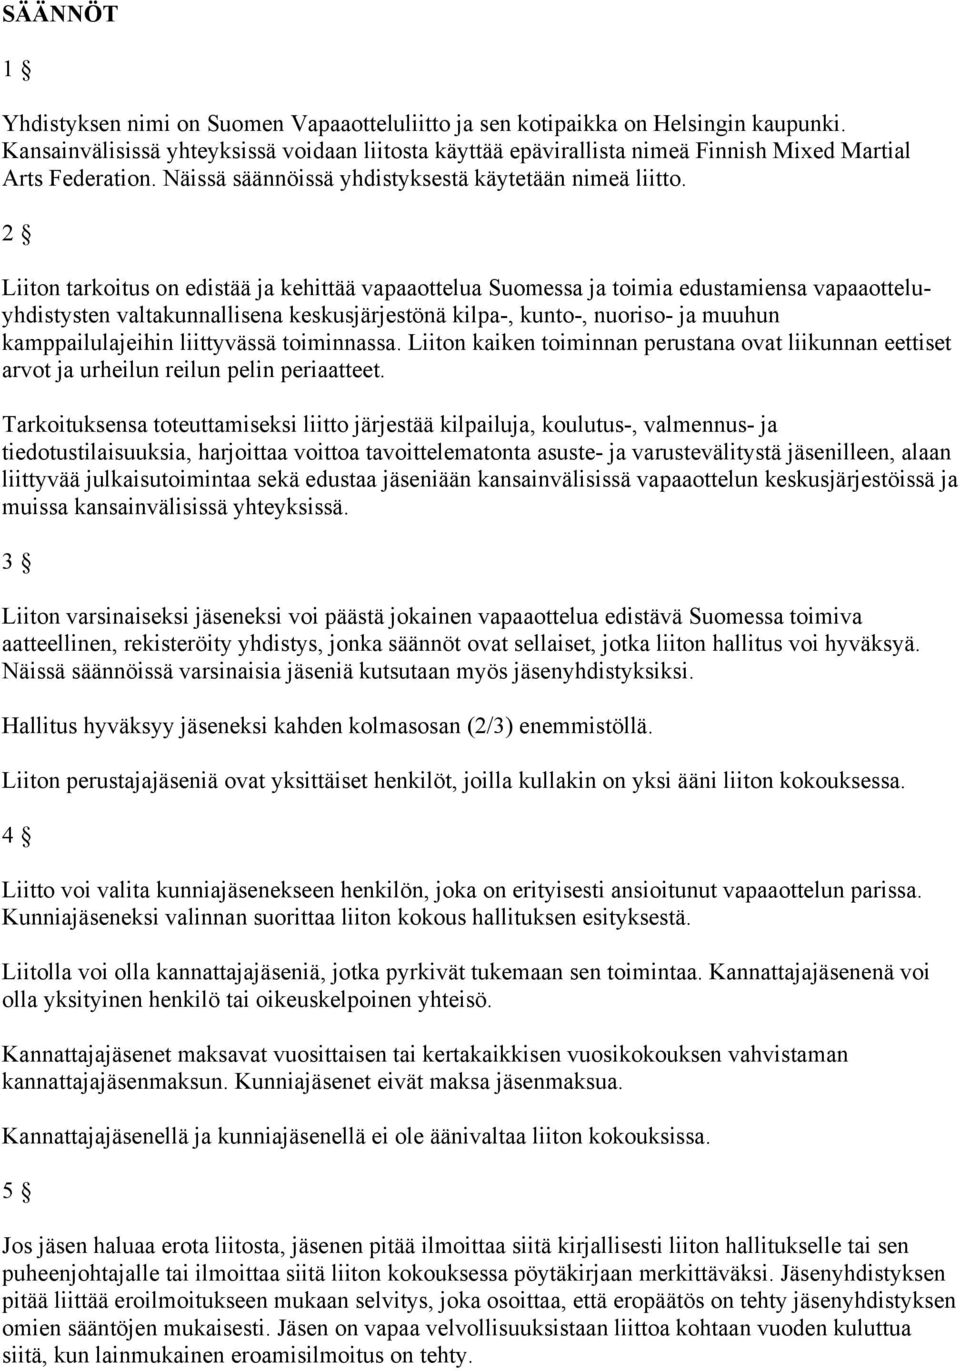 2 Liiton tarkoitus on edistää ja kehittää vapaaottelua Suomessa ja toimia edustamiensa vapaaotteluyhdistysten valtakunnallisena keskusjärjestönä kilpa-, kunto-, nuoriso- ja muuhun kamppailulajeihin